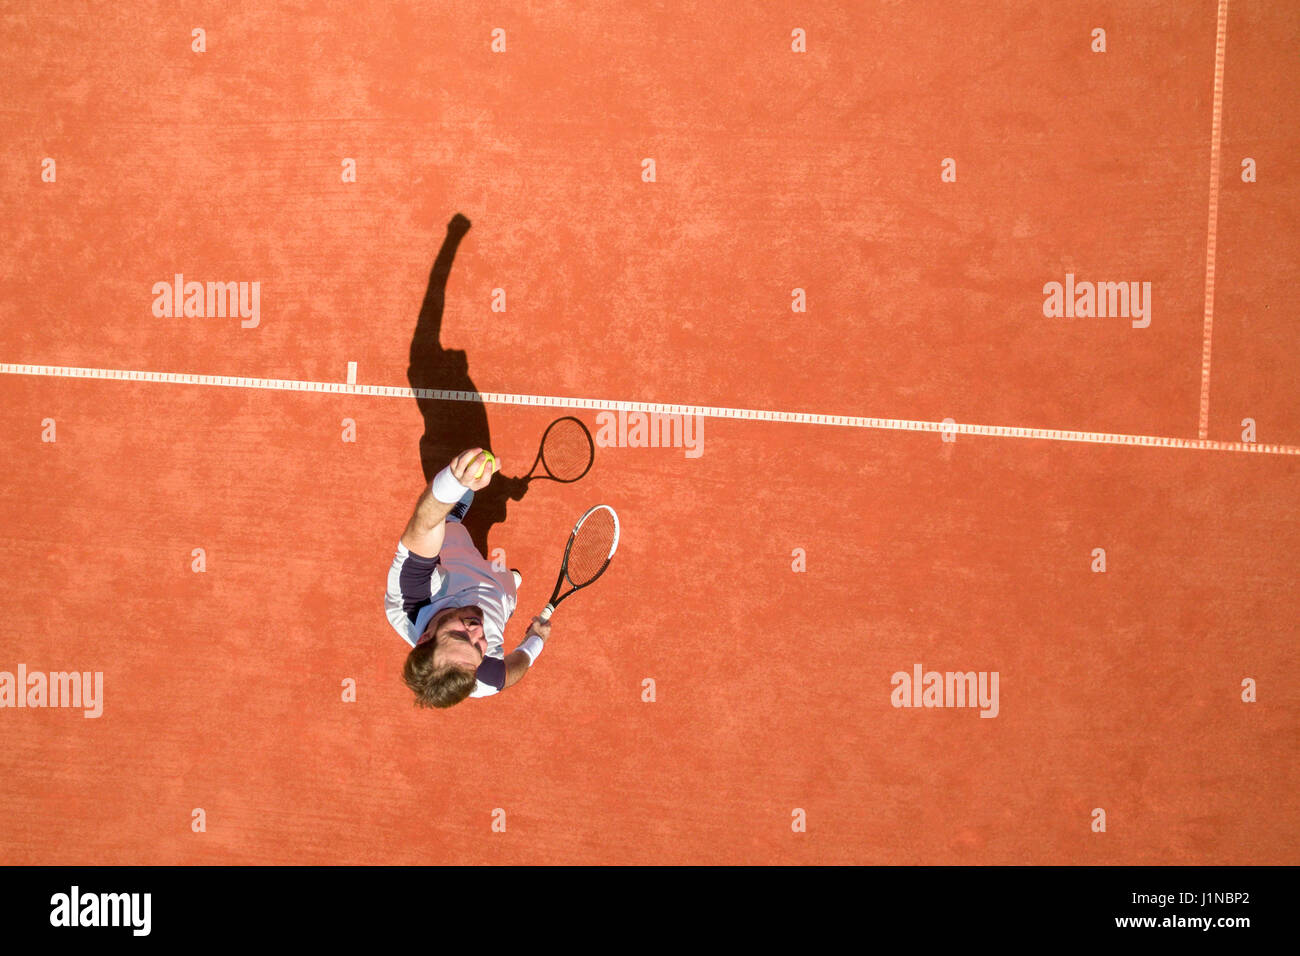 Vista superiore del giocatore di tennis sul campo da tennis Foto Stock